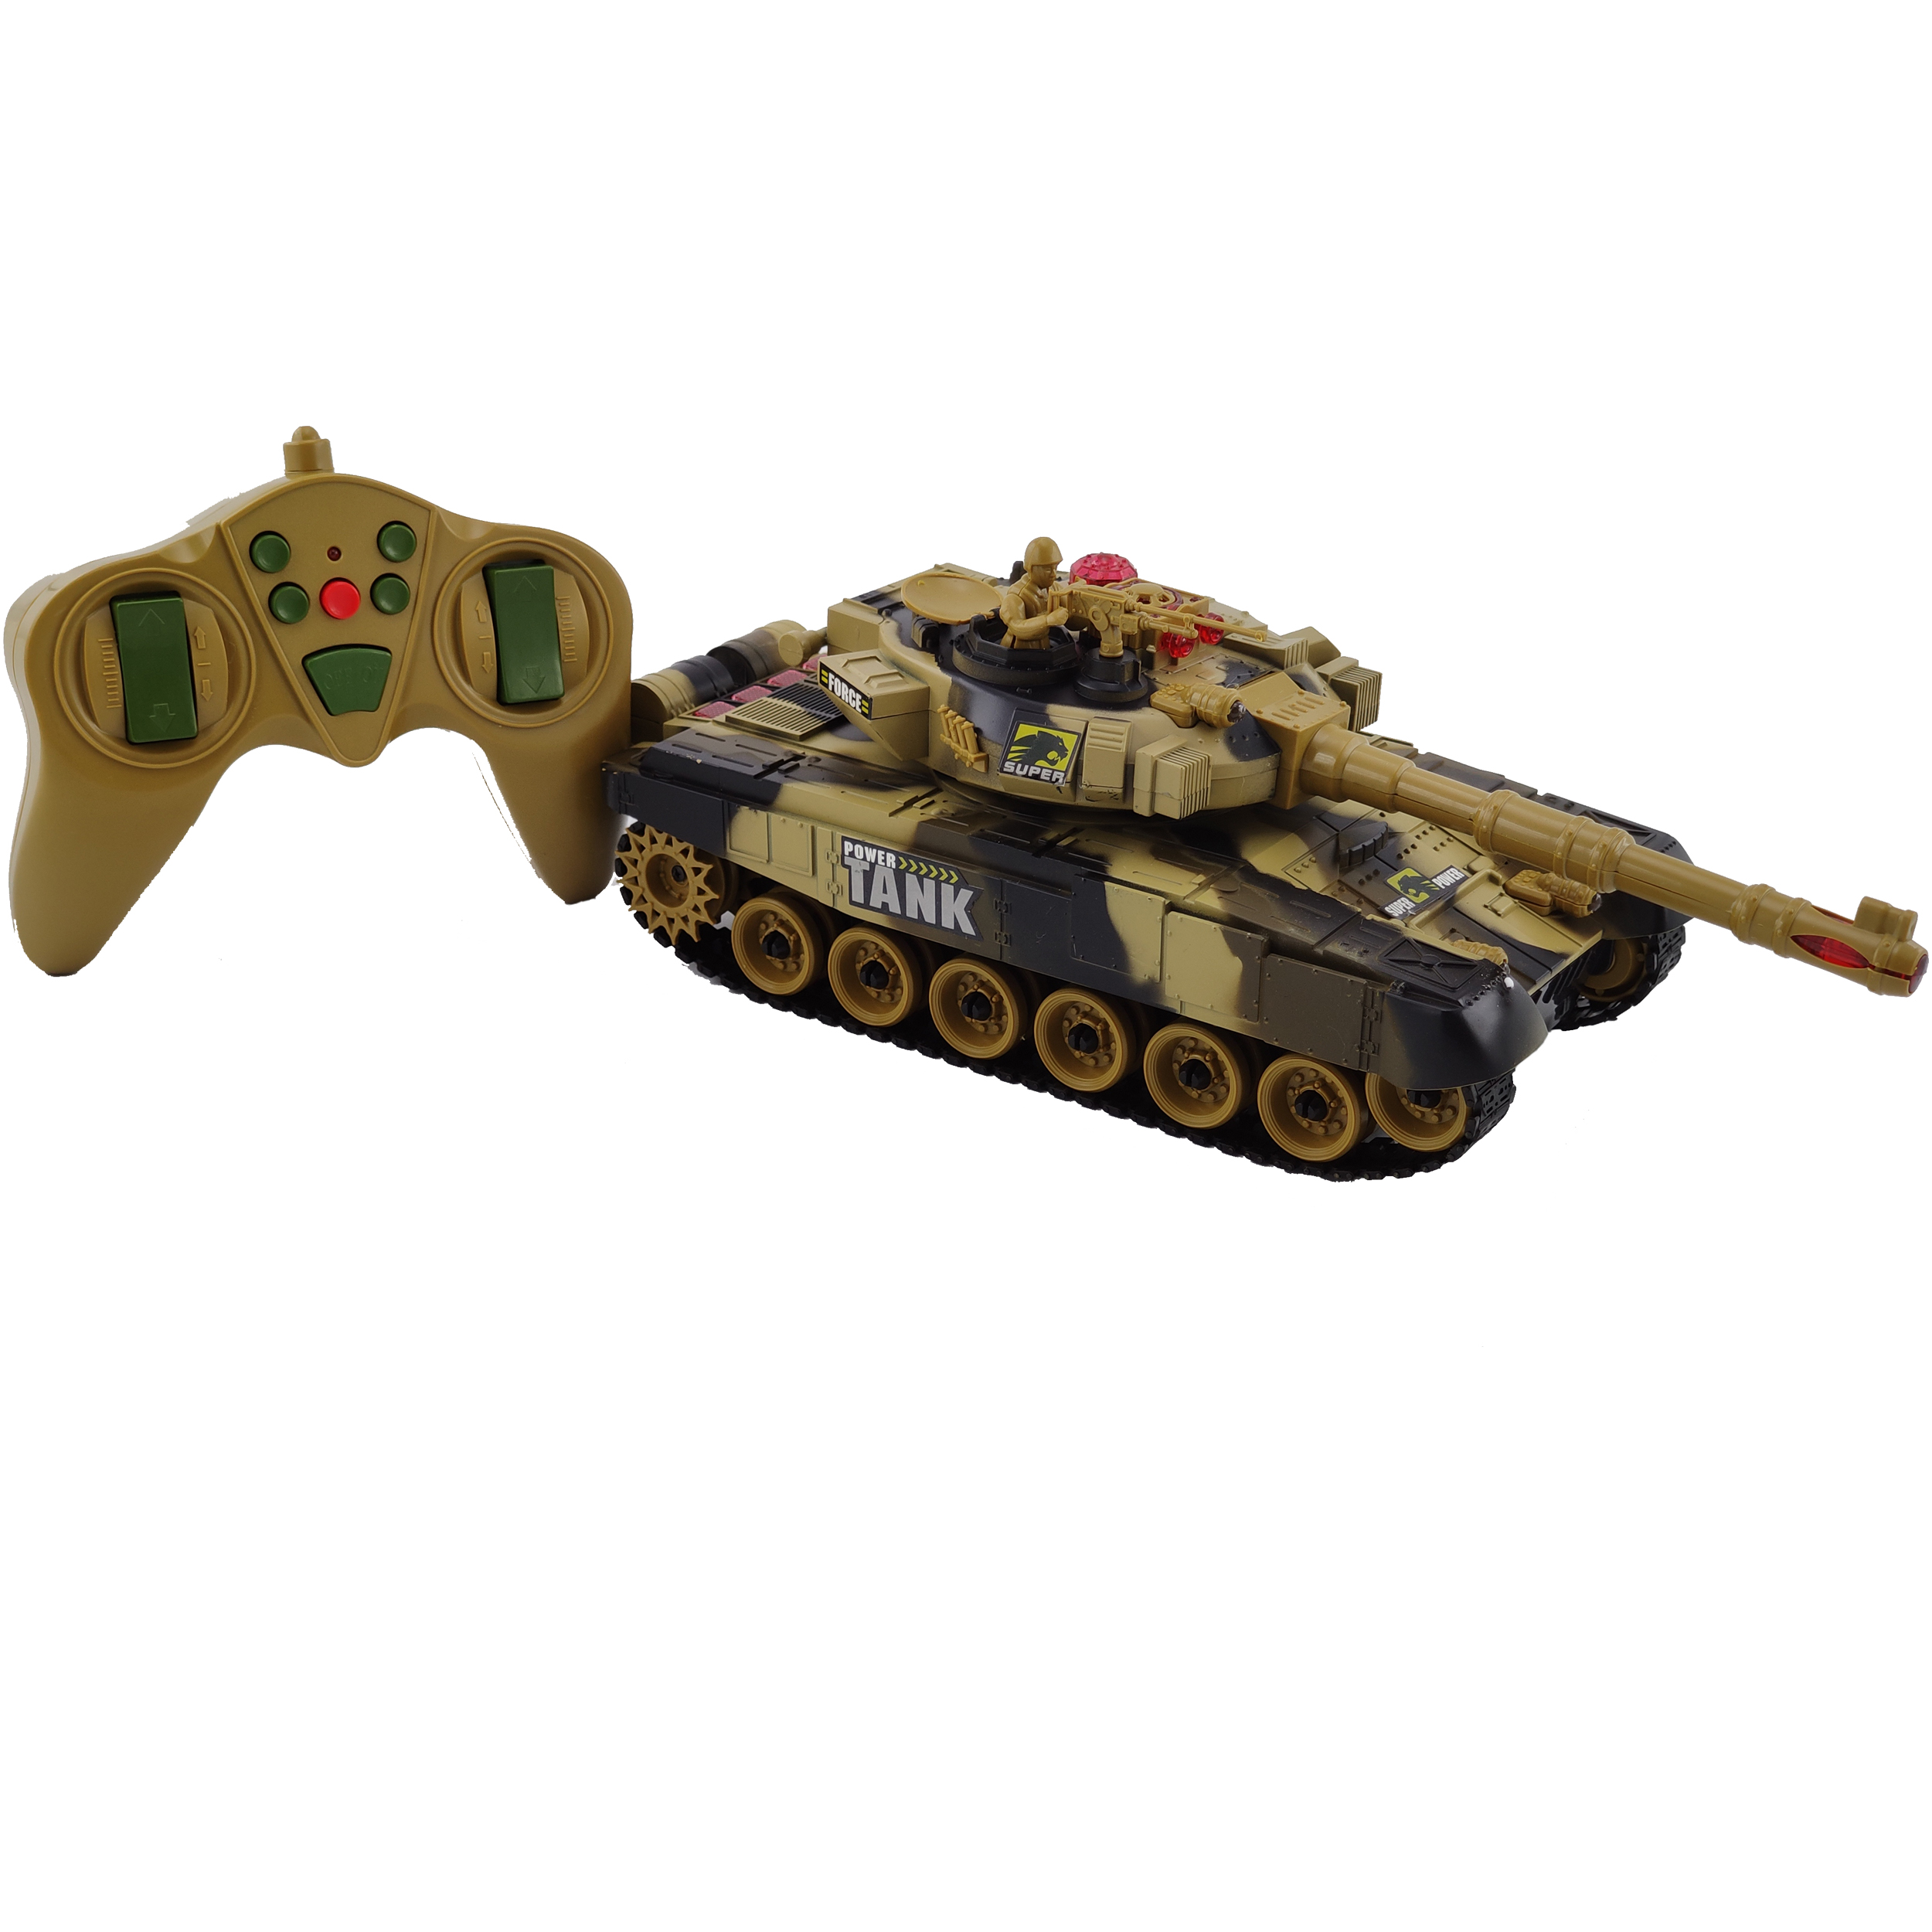 اسباب بازی جنگی مدل تانک کنترلی کد 9993